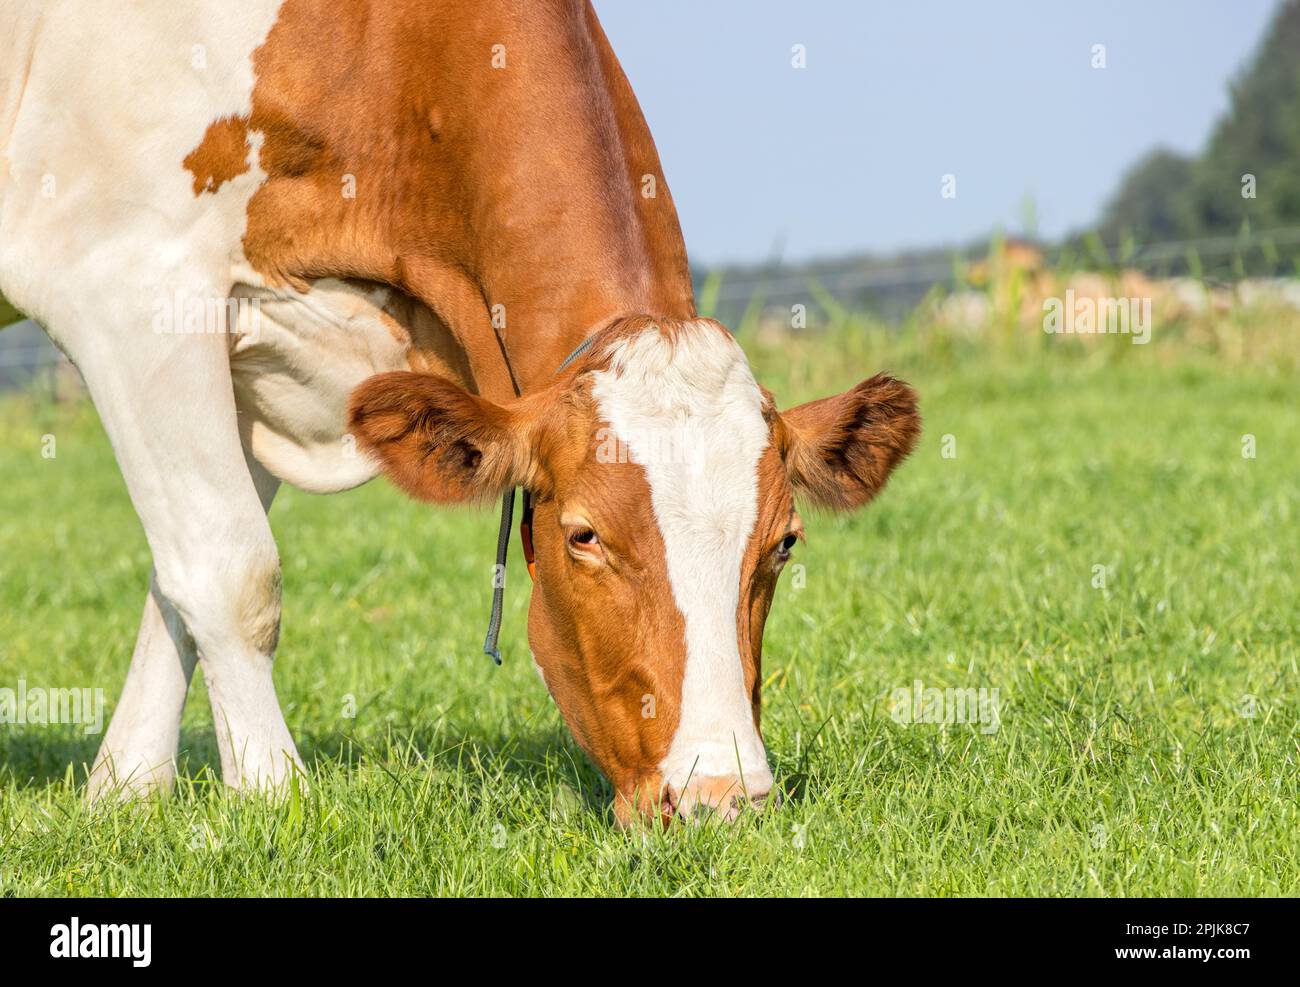 Cara de vaca pastando, cerca comiendo hojas de hierba, rojo y blanco, en un pasto verde, cerca de una cabeza, abajo Foto de stock